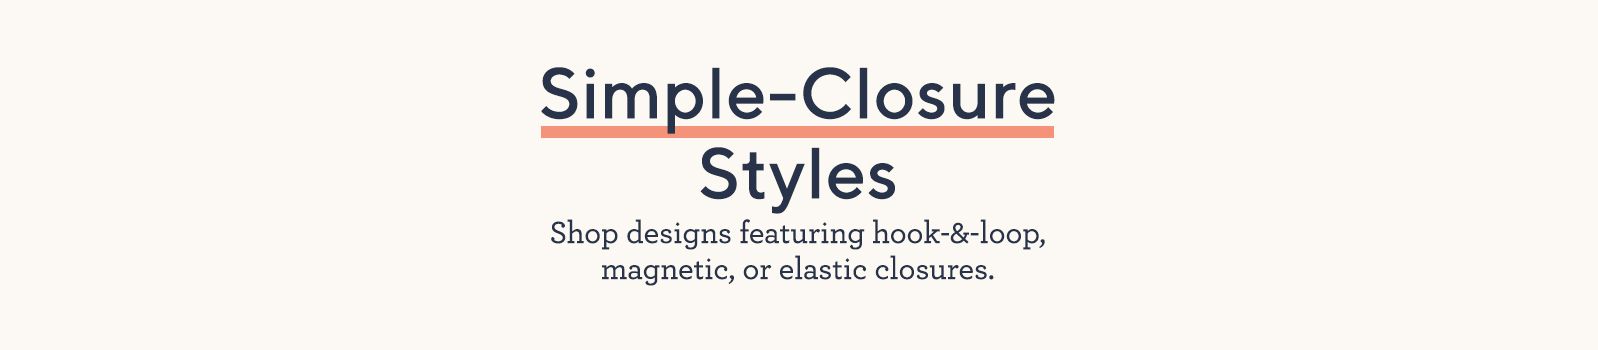 Simple-Closure Styles.  Shop designs featuring hook-&-loop, magnetic, or elastic closures.